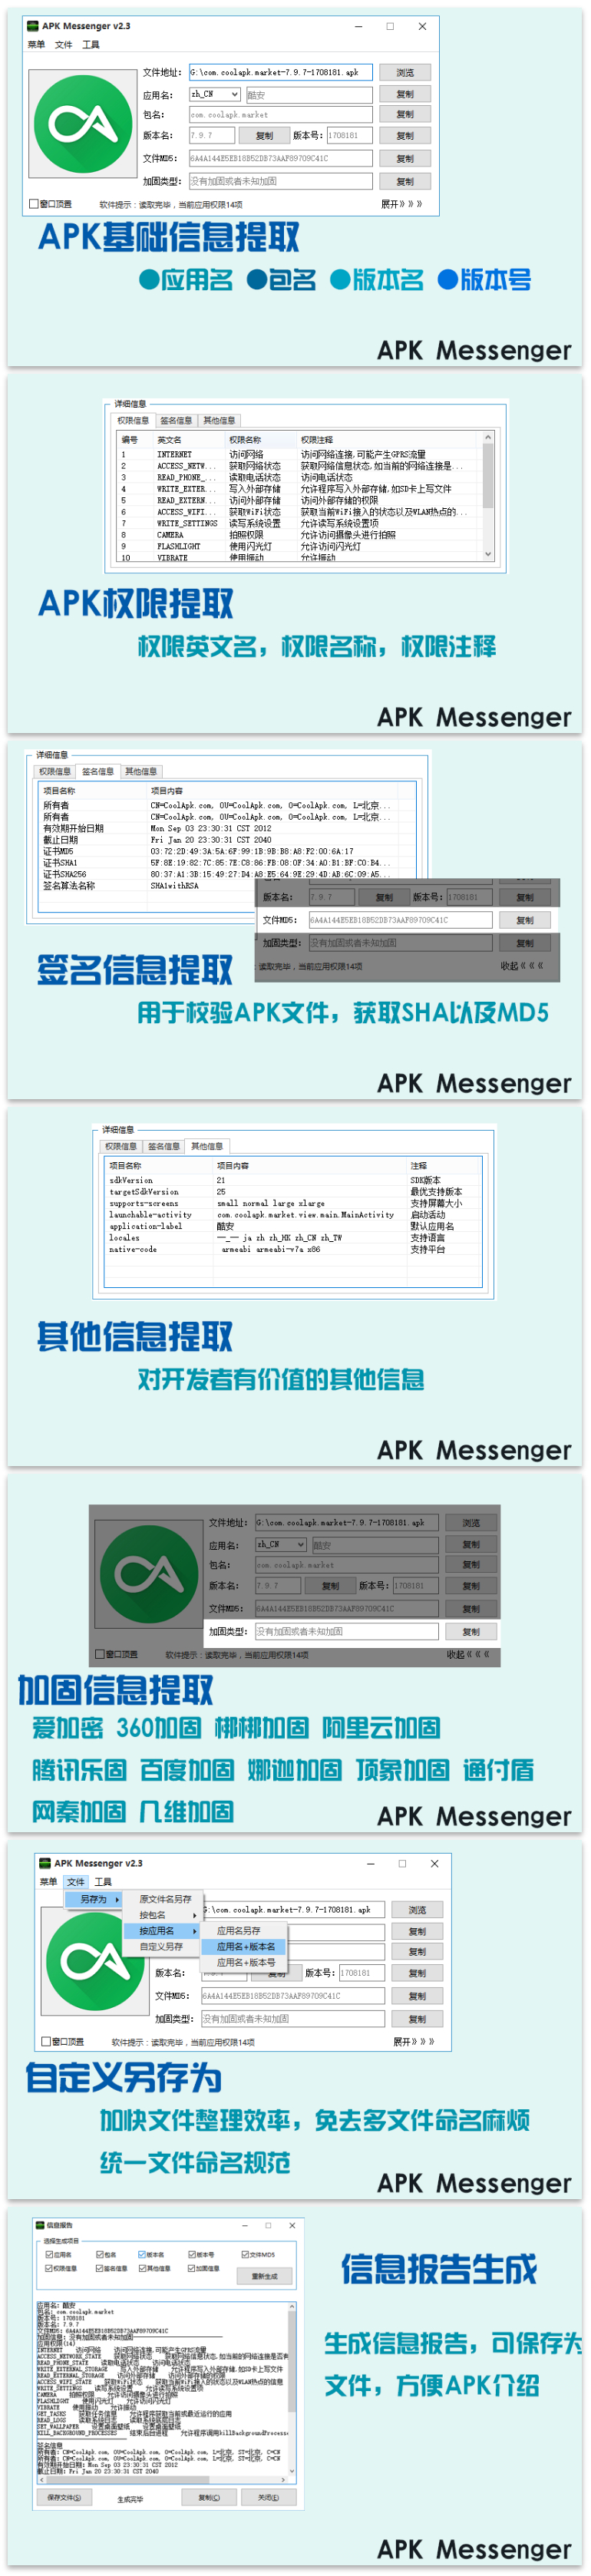 APK Messenger v2.4 电脑查APK信息利器